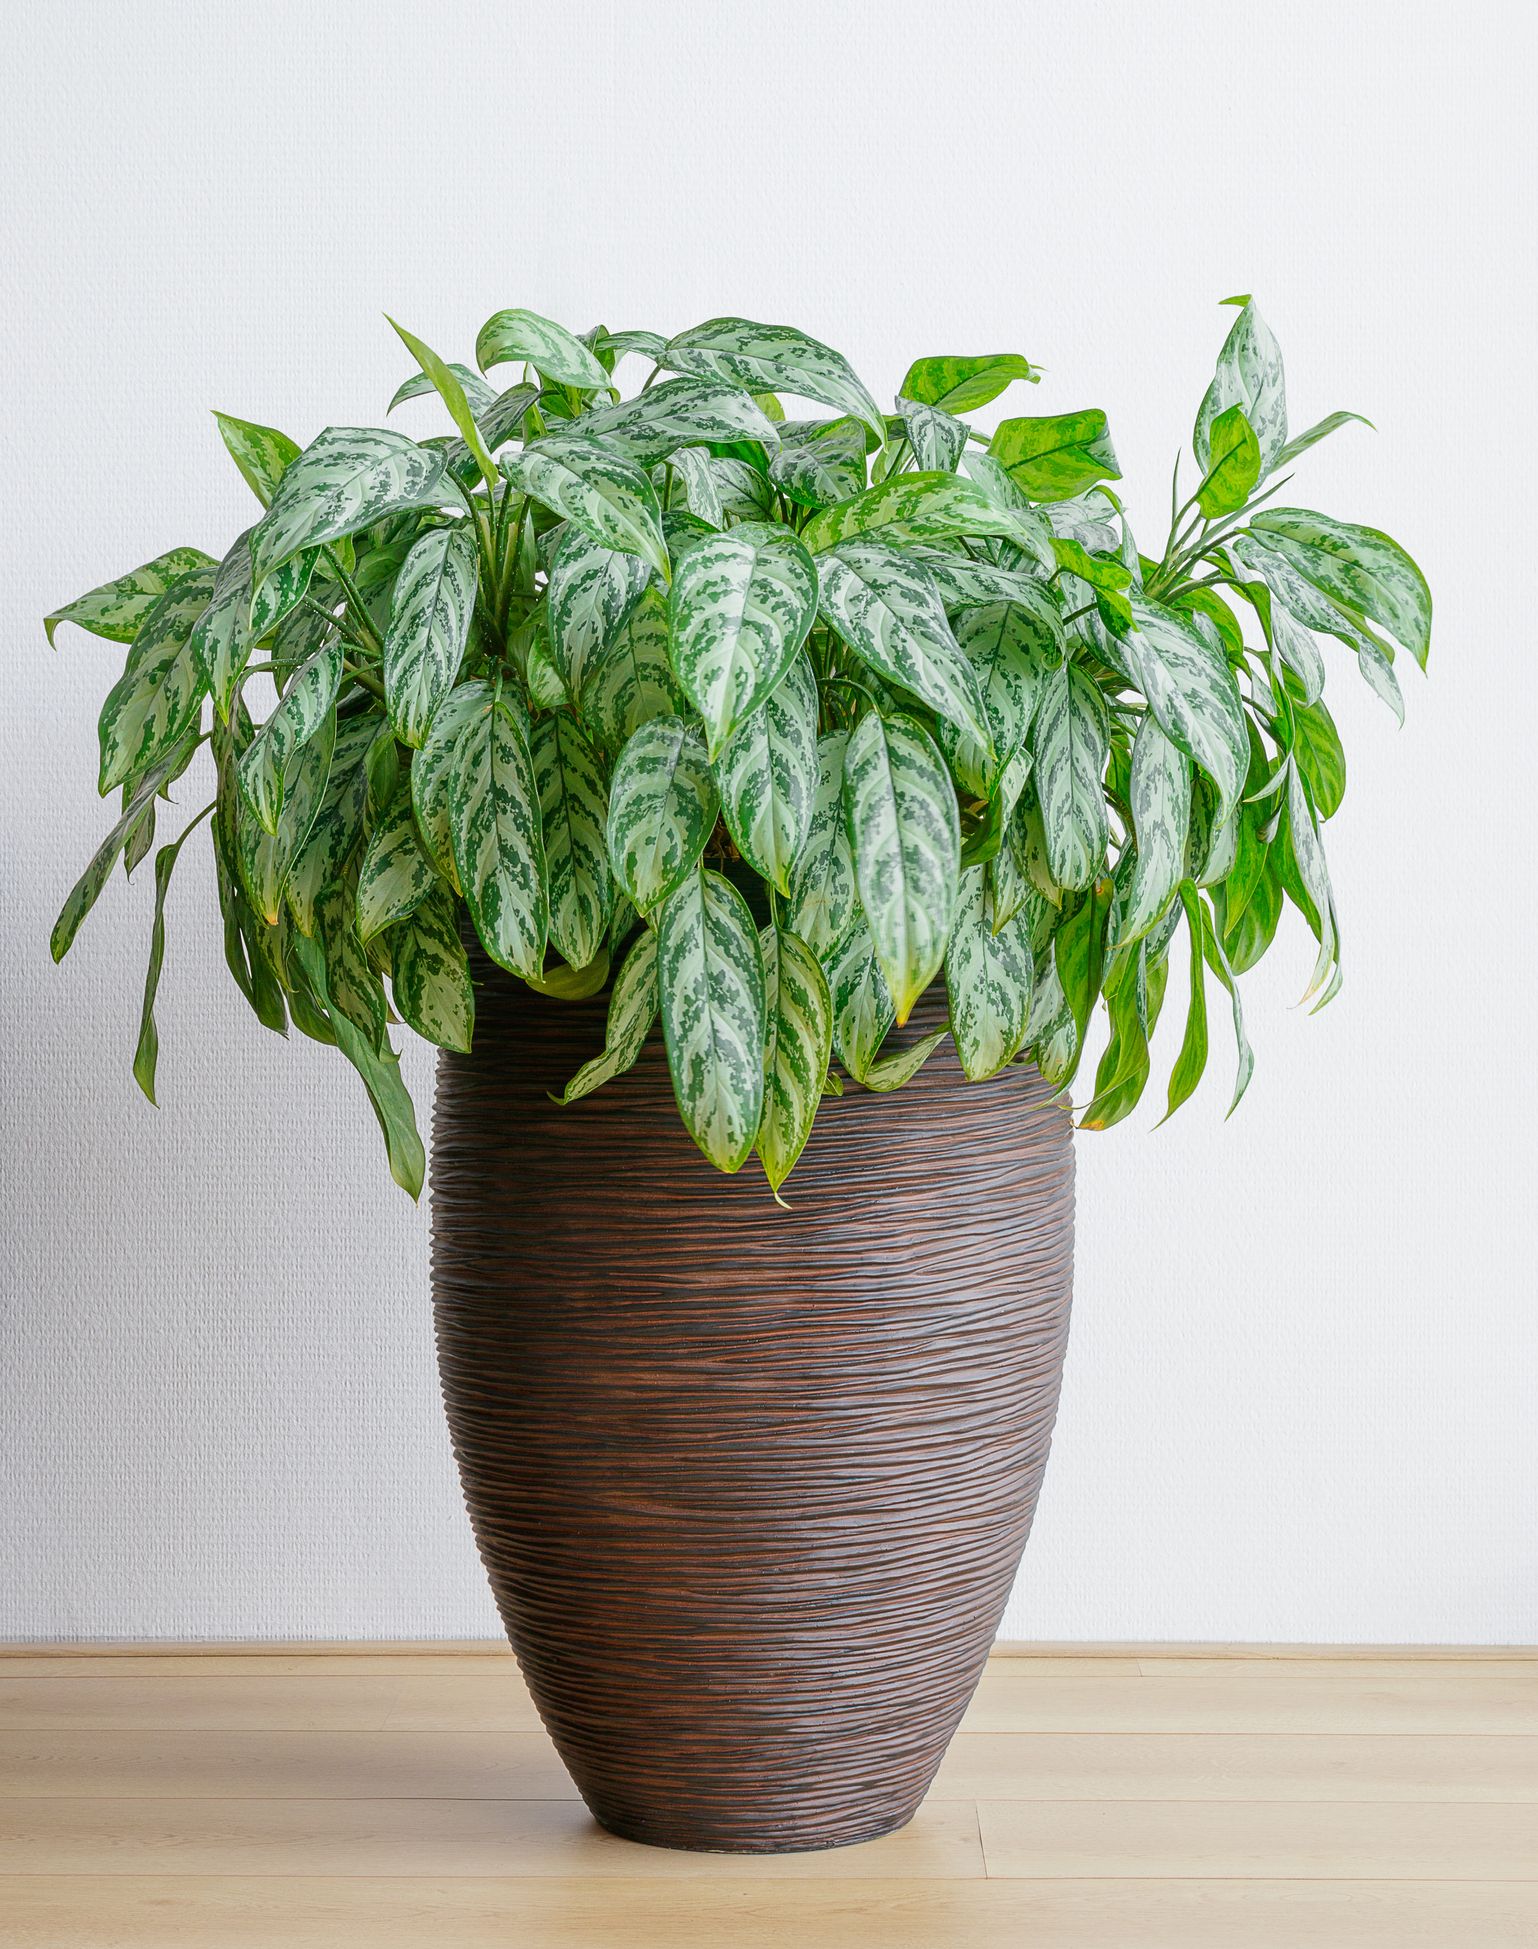 15 Best Living Room Plants Living Room Indoor Plants To Buy Now